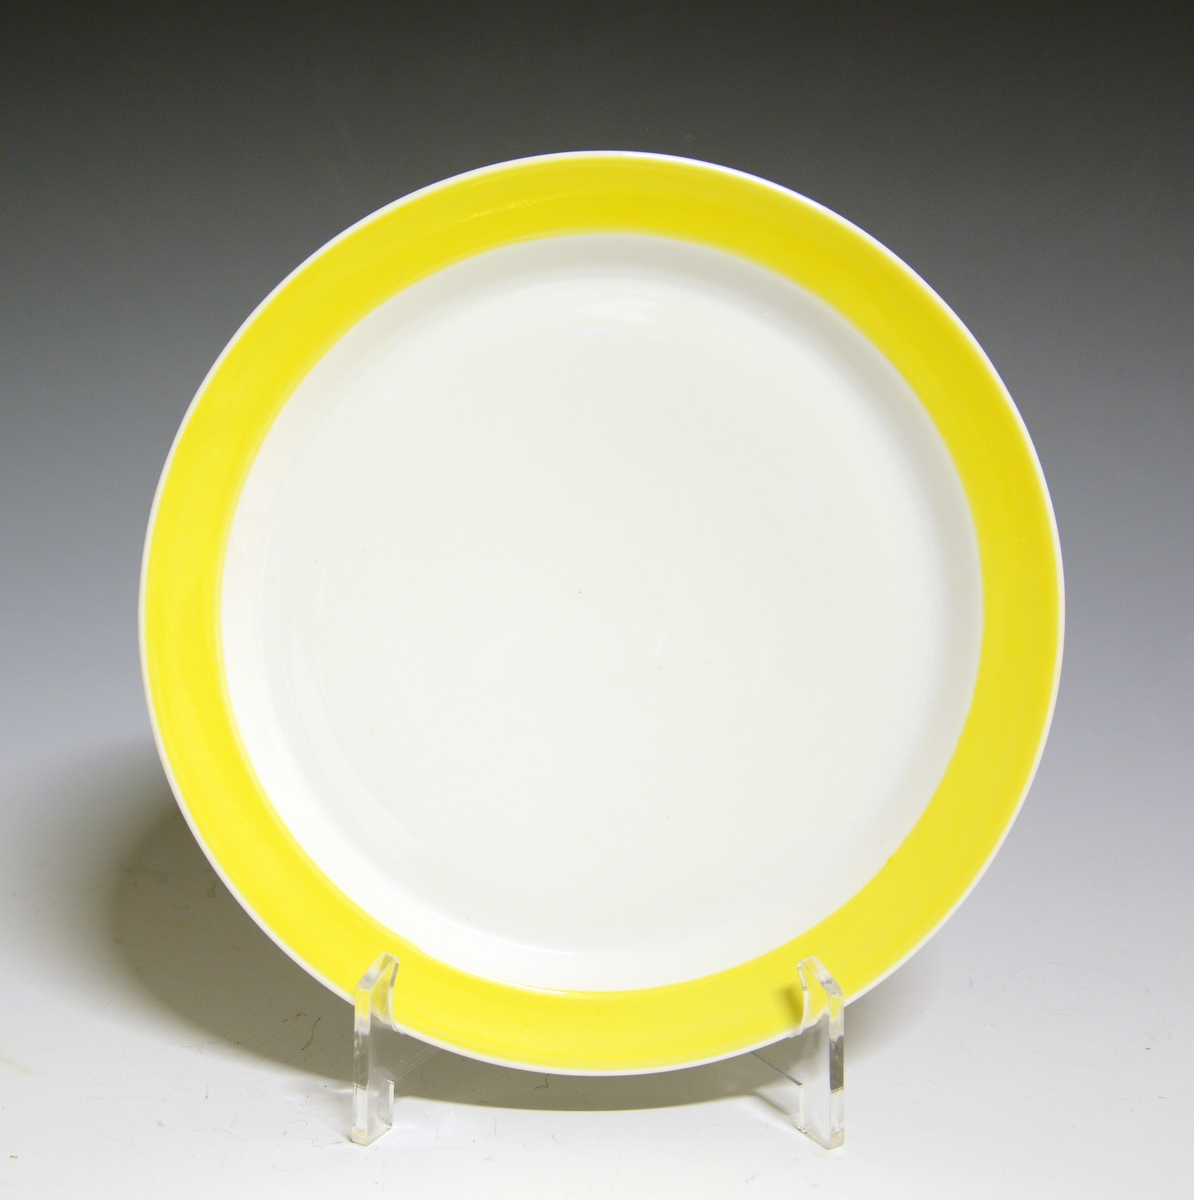 Asjett av porselen. Hvit med gult bånd rundt fanen.

Modell: Style, formgitt av Poul Jensen.